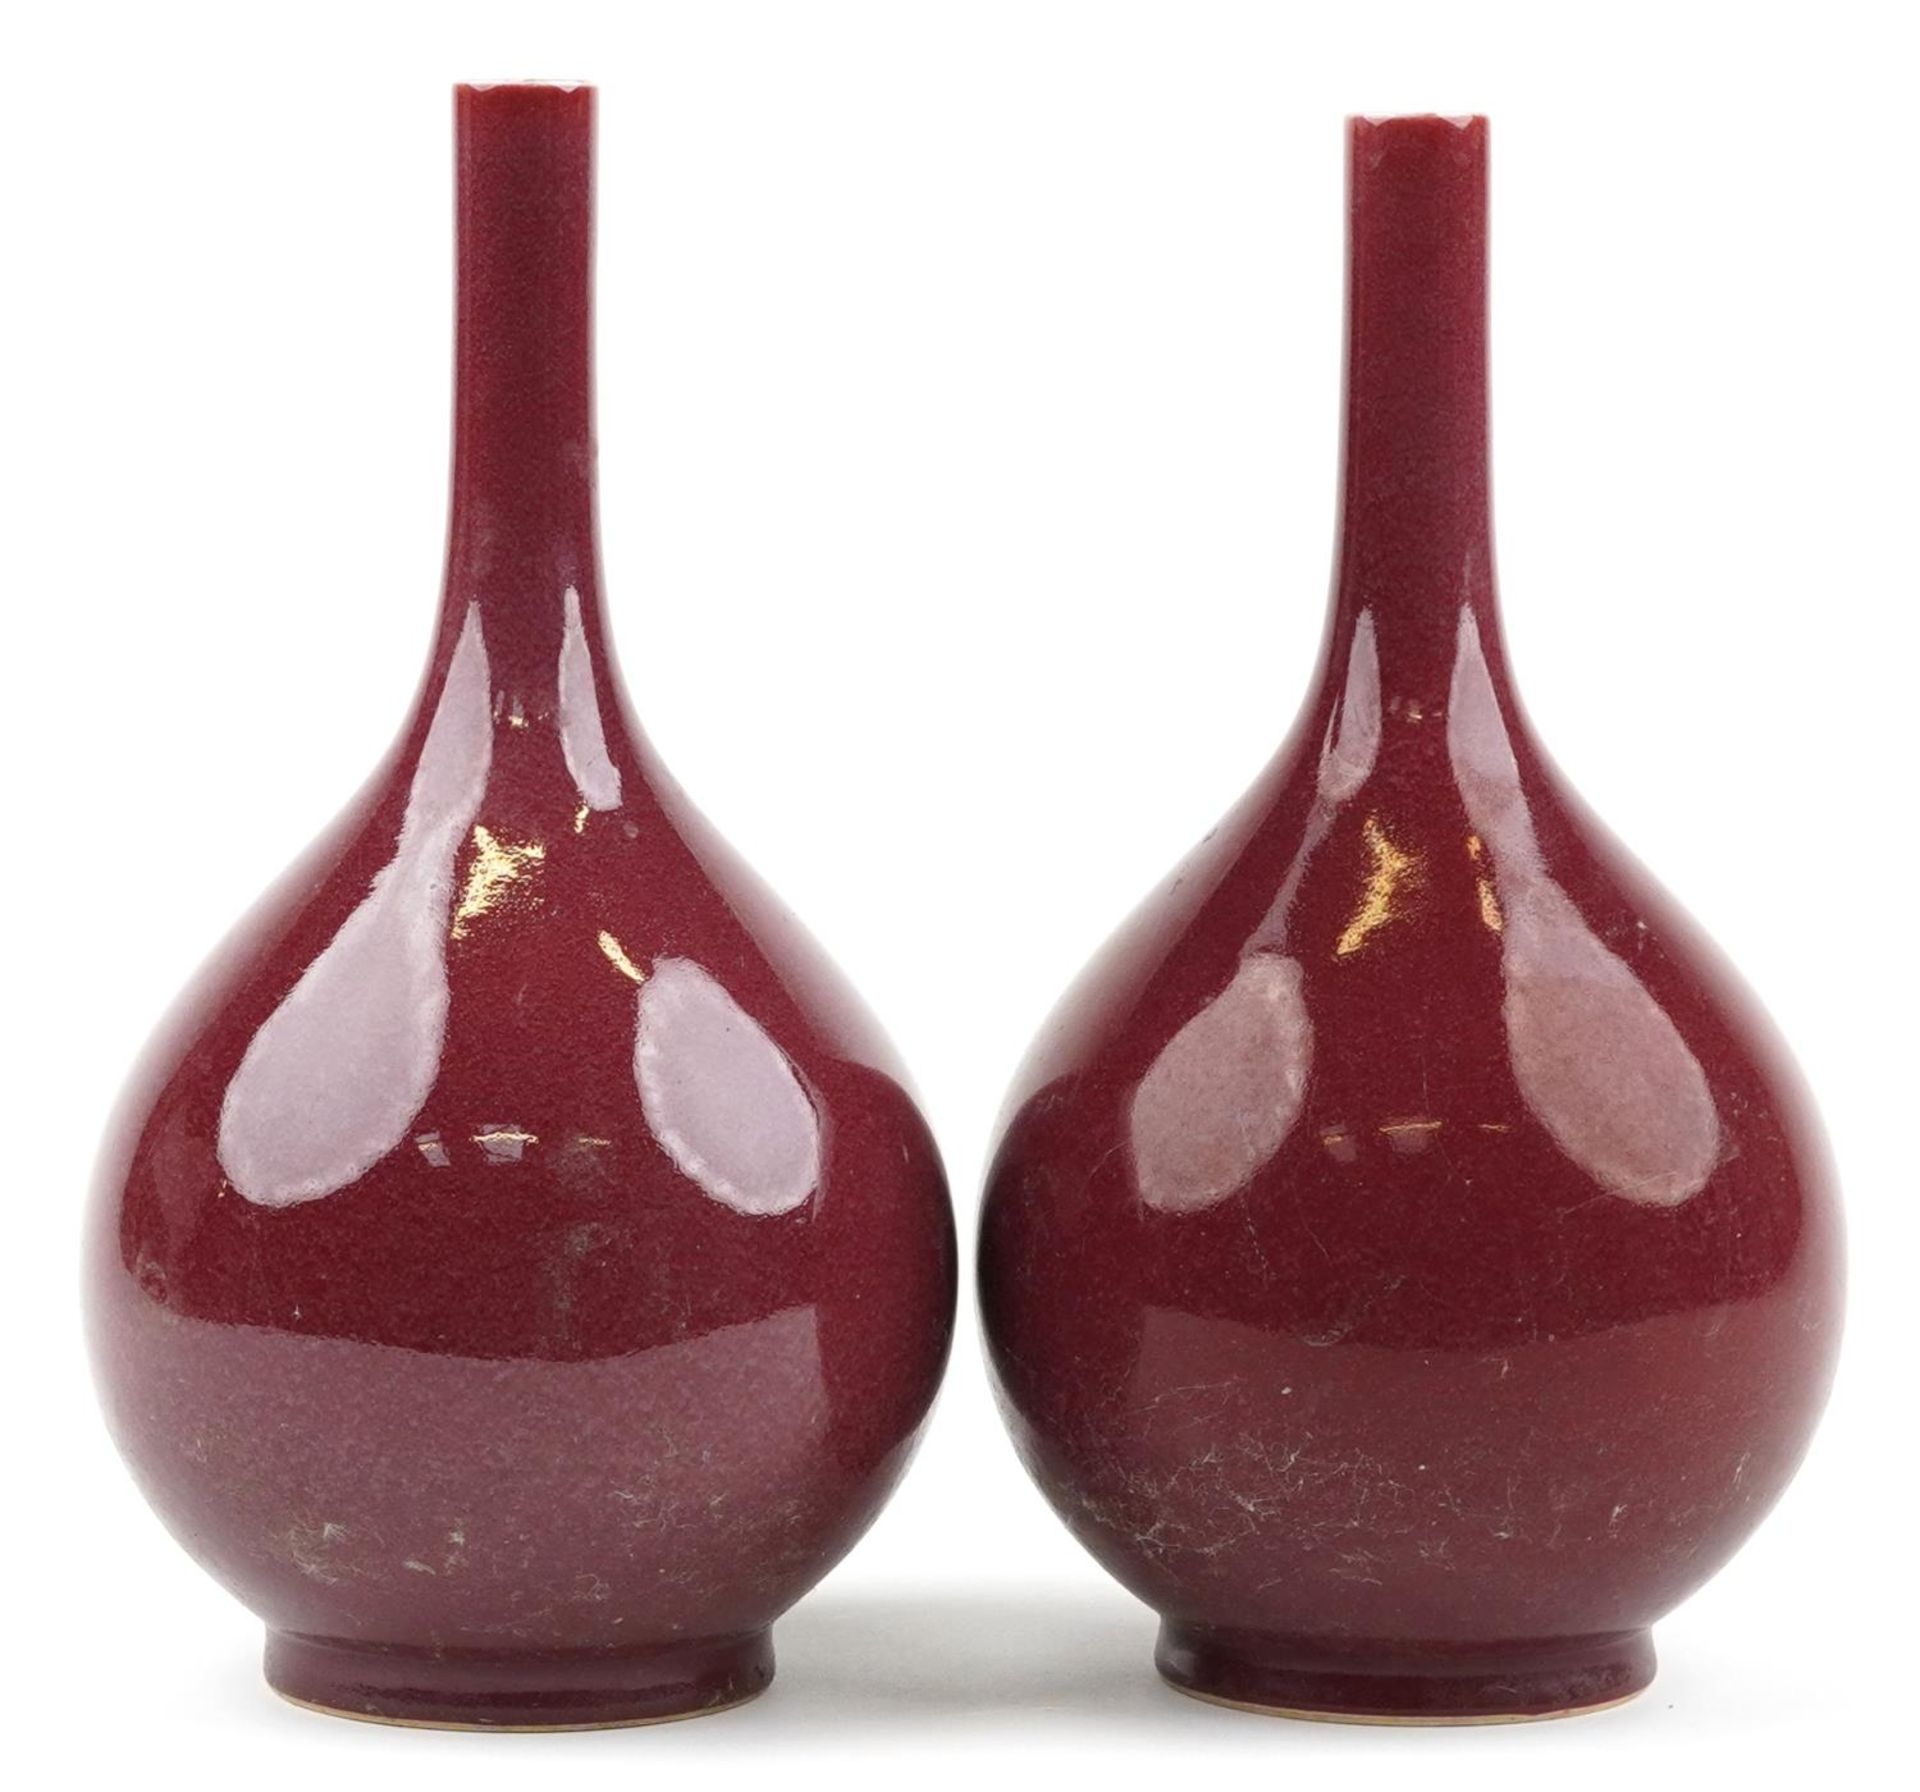 Pair of Chinese porcelain long neck bottle vases having sang de boeuf glazes, each 34cm high : For